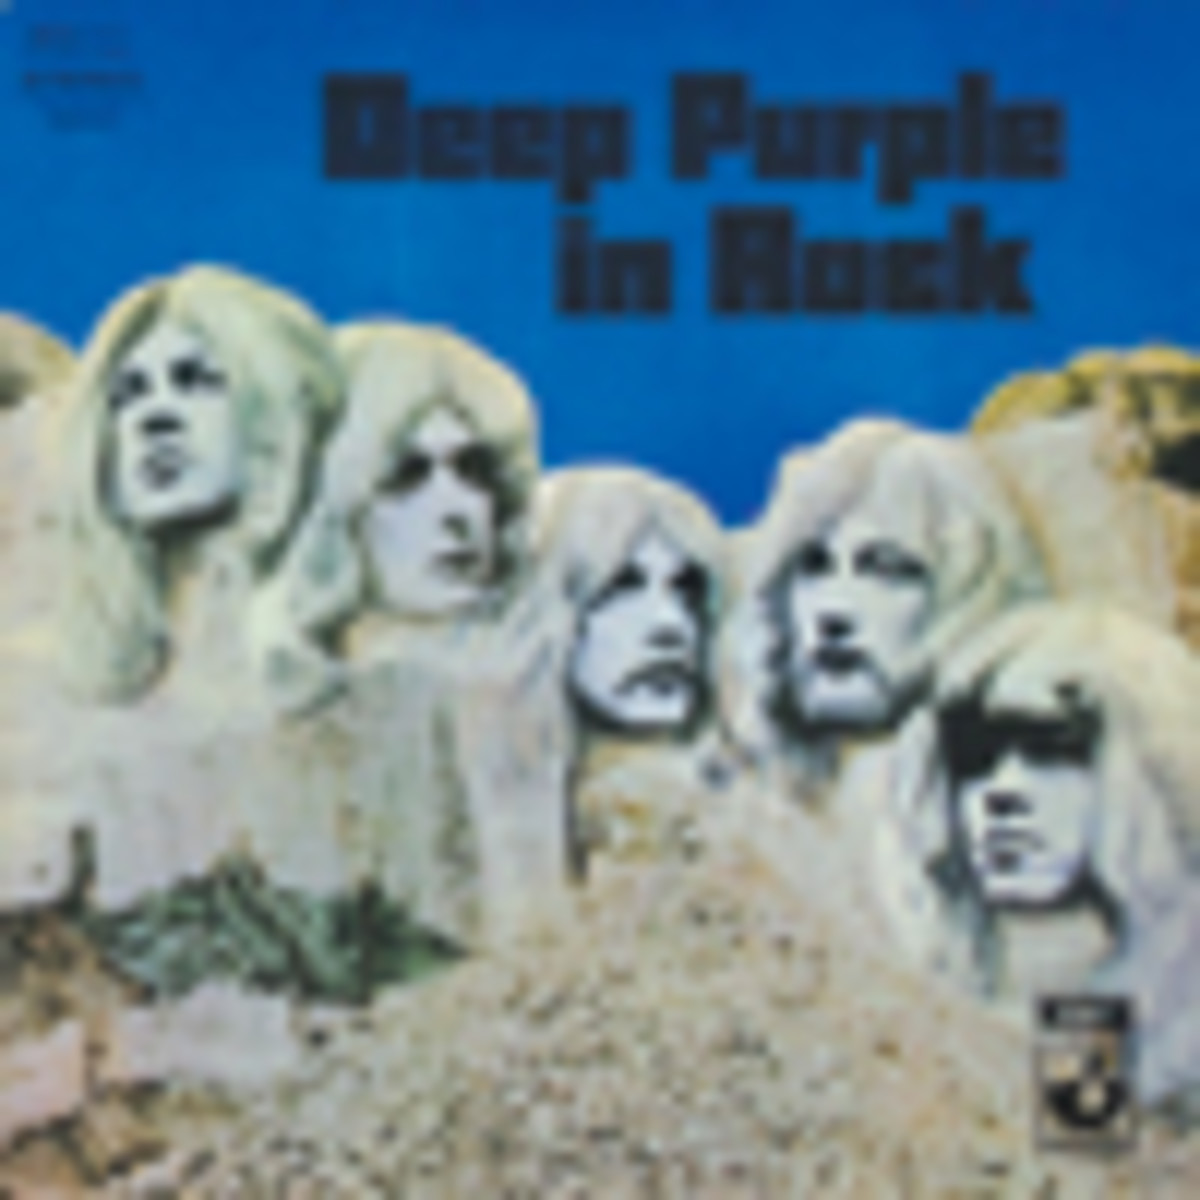 Deep Purple In Rock